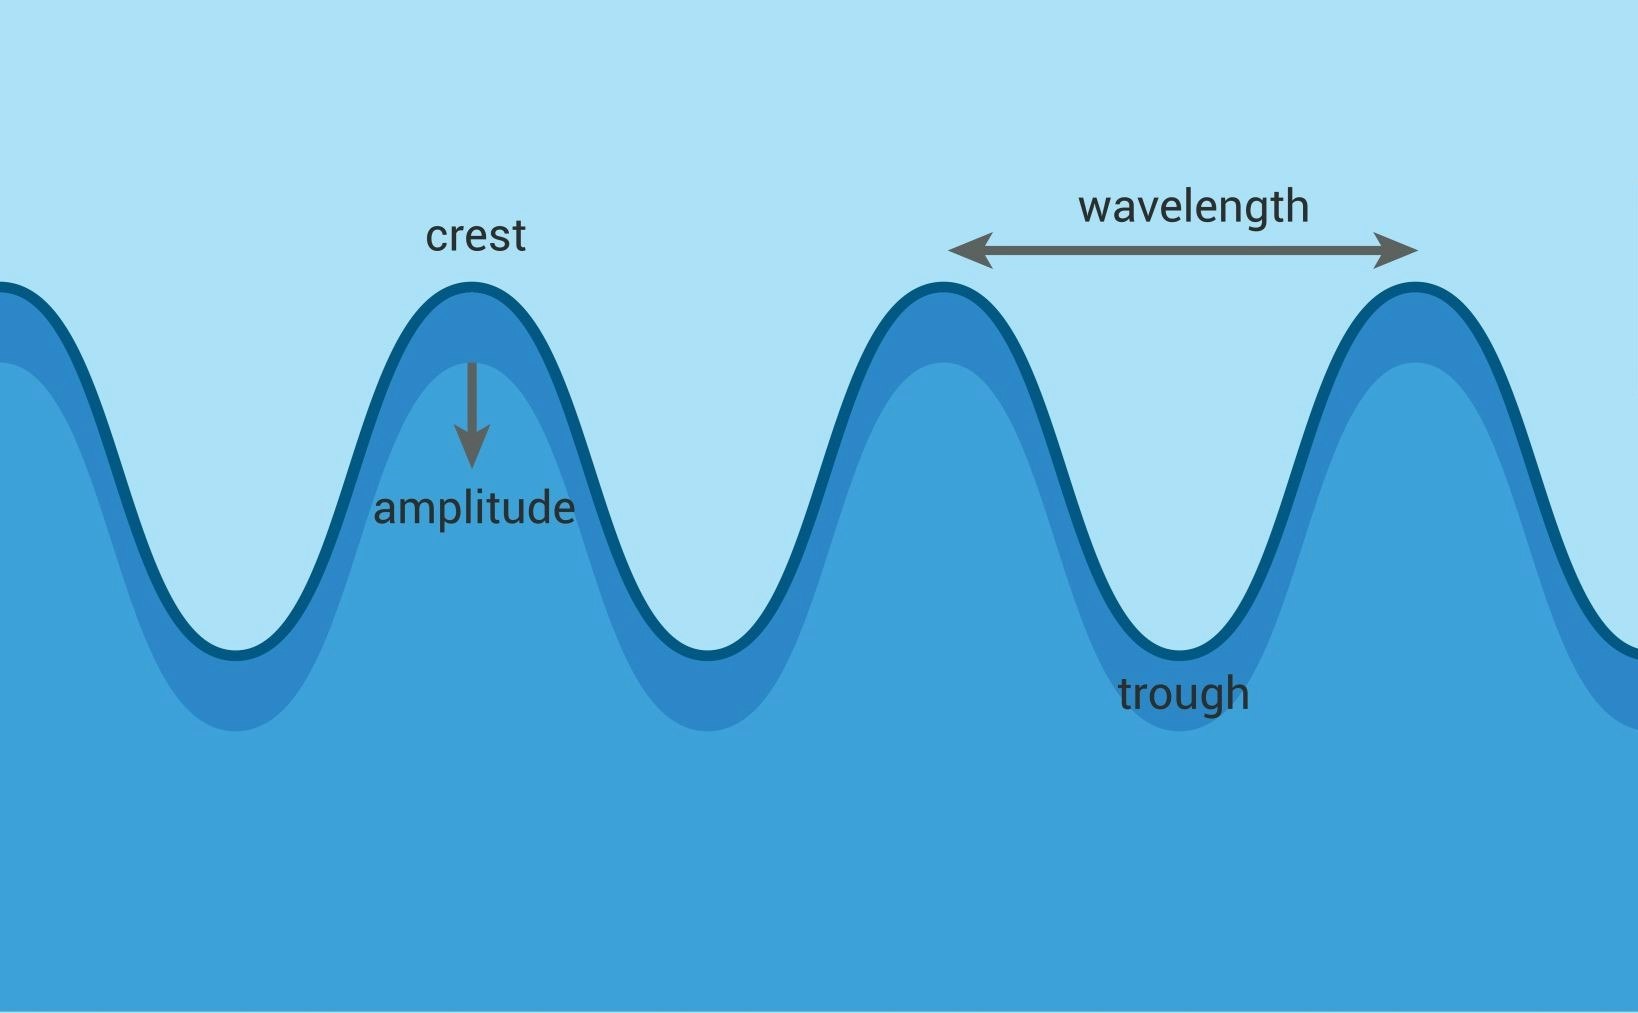 Grafikk som viser egenskapene til bølger til sjøs